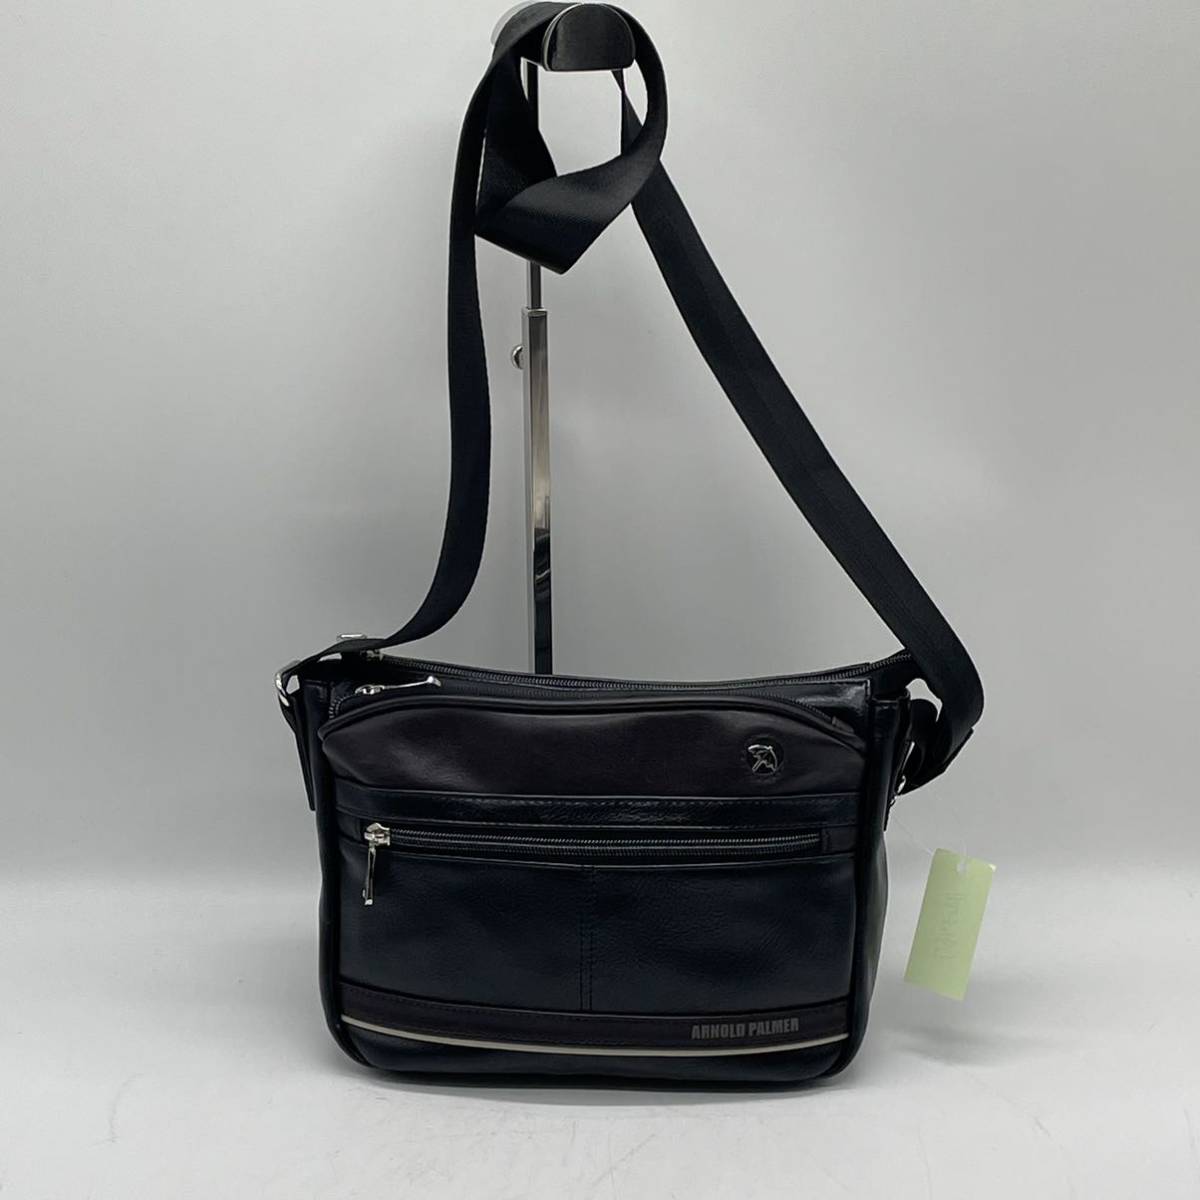 *BN3467*ArnoldPalmer Arnold Palmer shoulder bag business bag leather black 